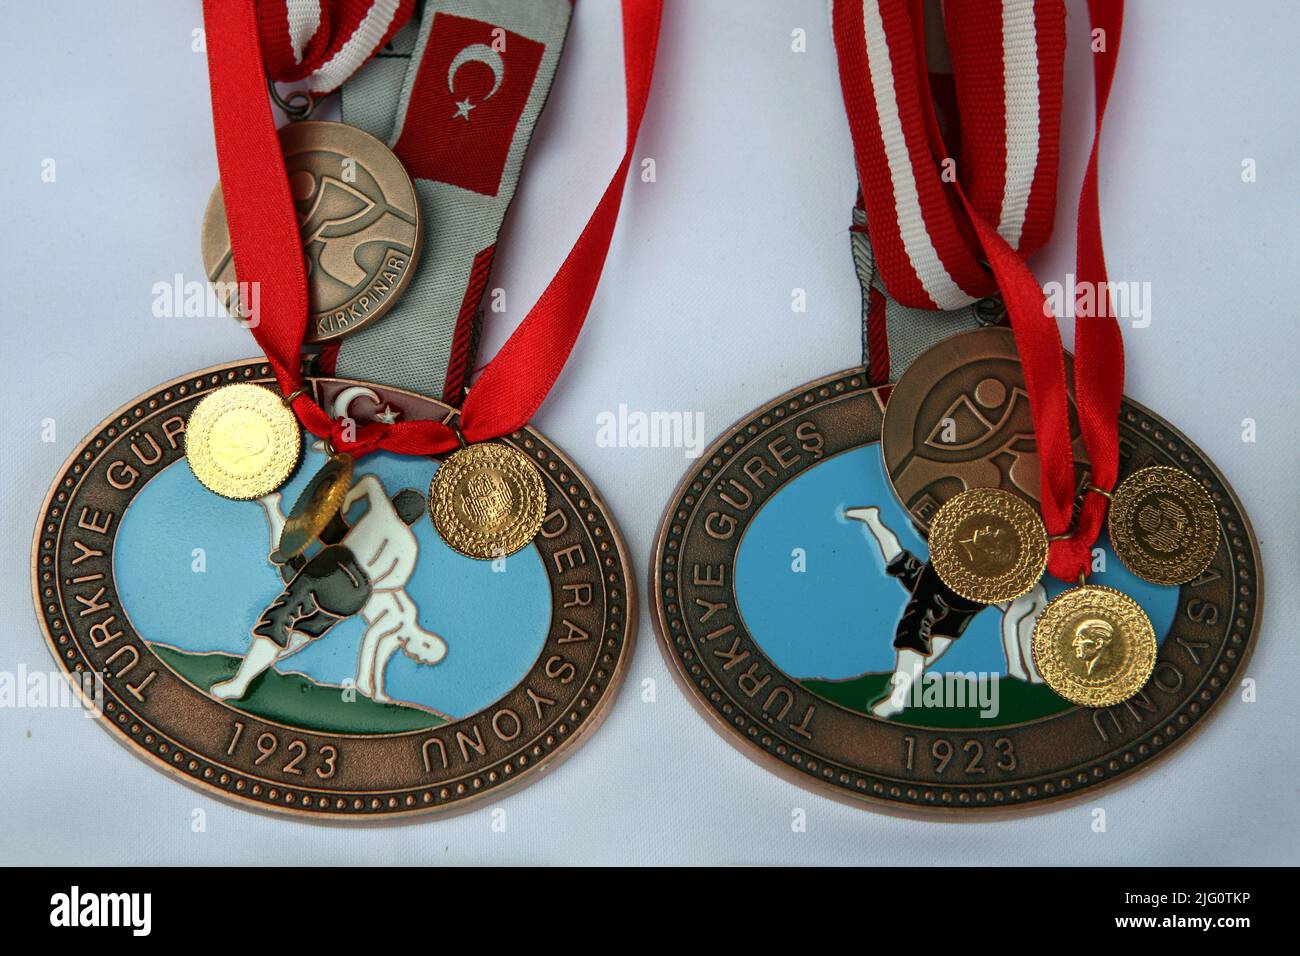 Kırkpınar (Wrestling du pétrole turc). Médailles des gagnants photographiés lors du tournoi Kırkpınar 648th à Edirne, Turquie, le 5 juillet 2009. Banque D'Images